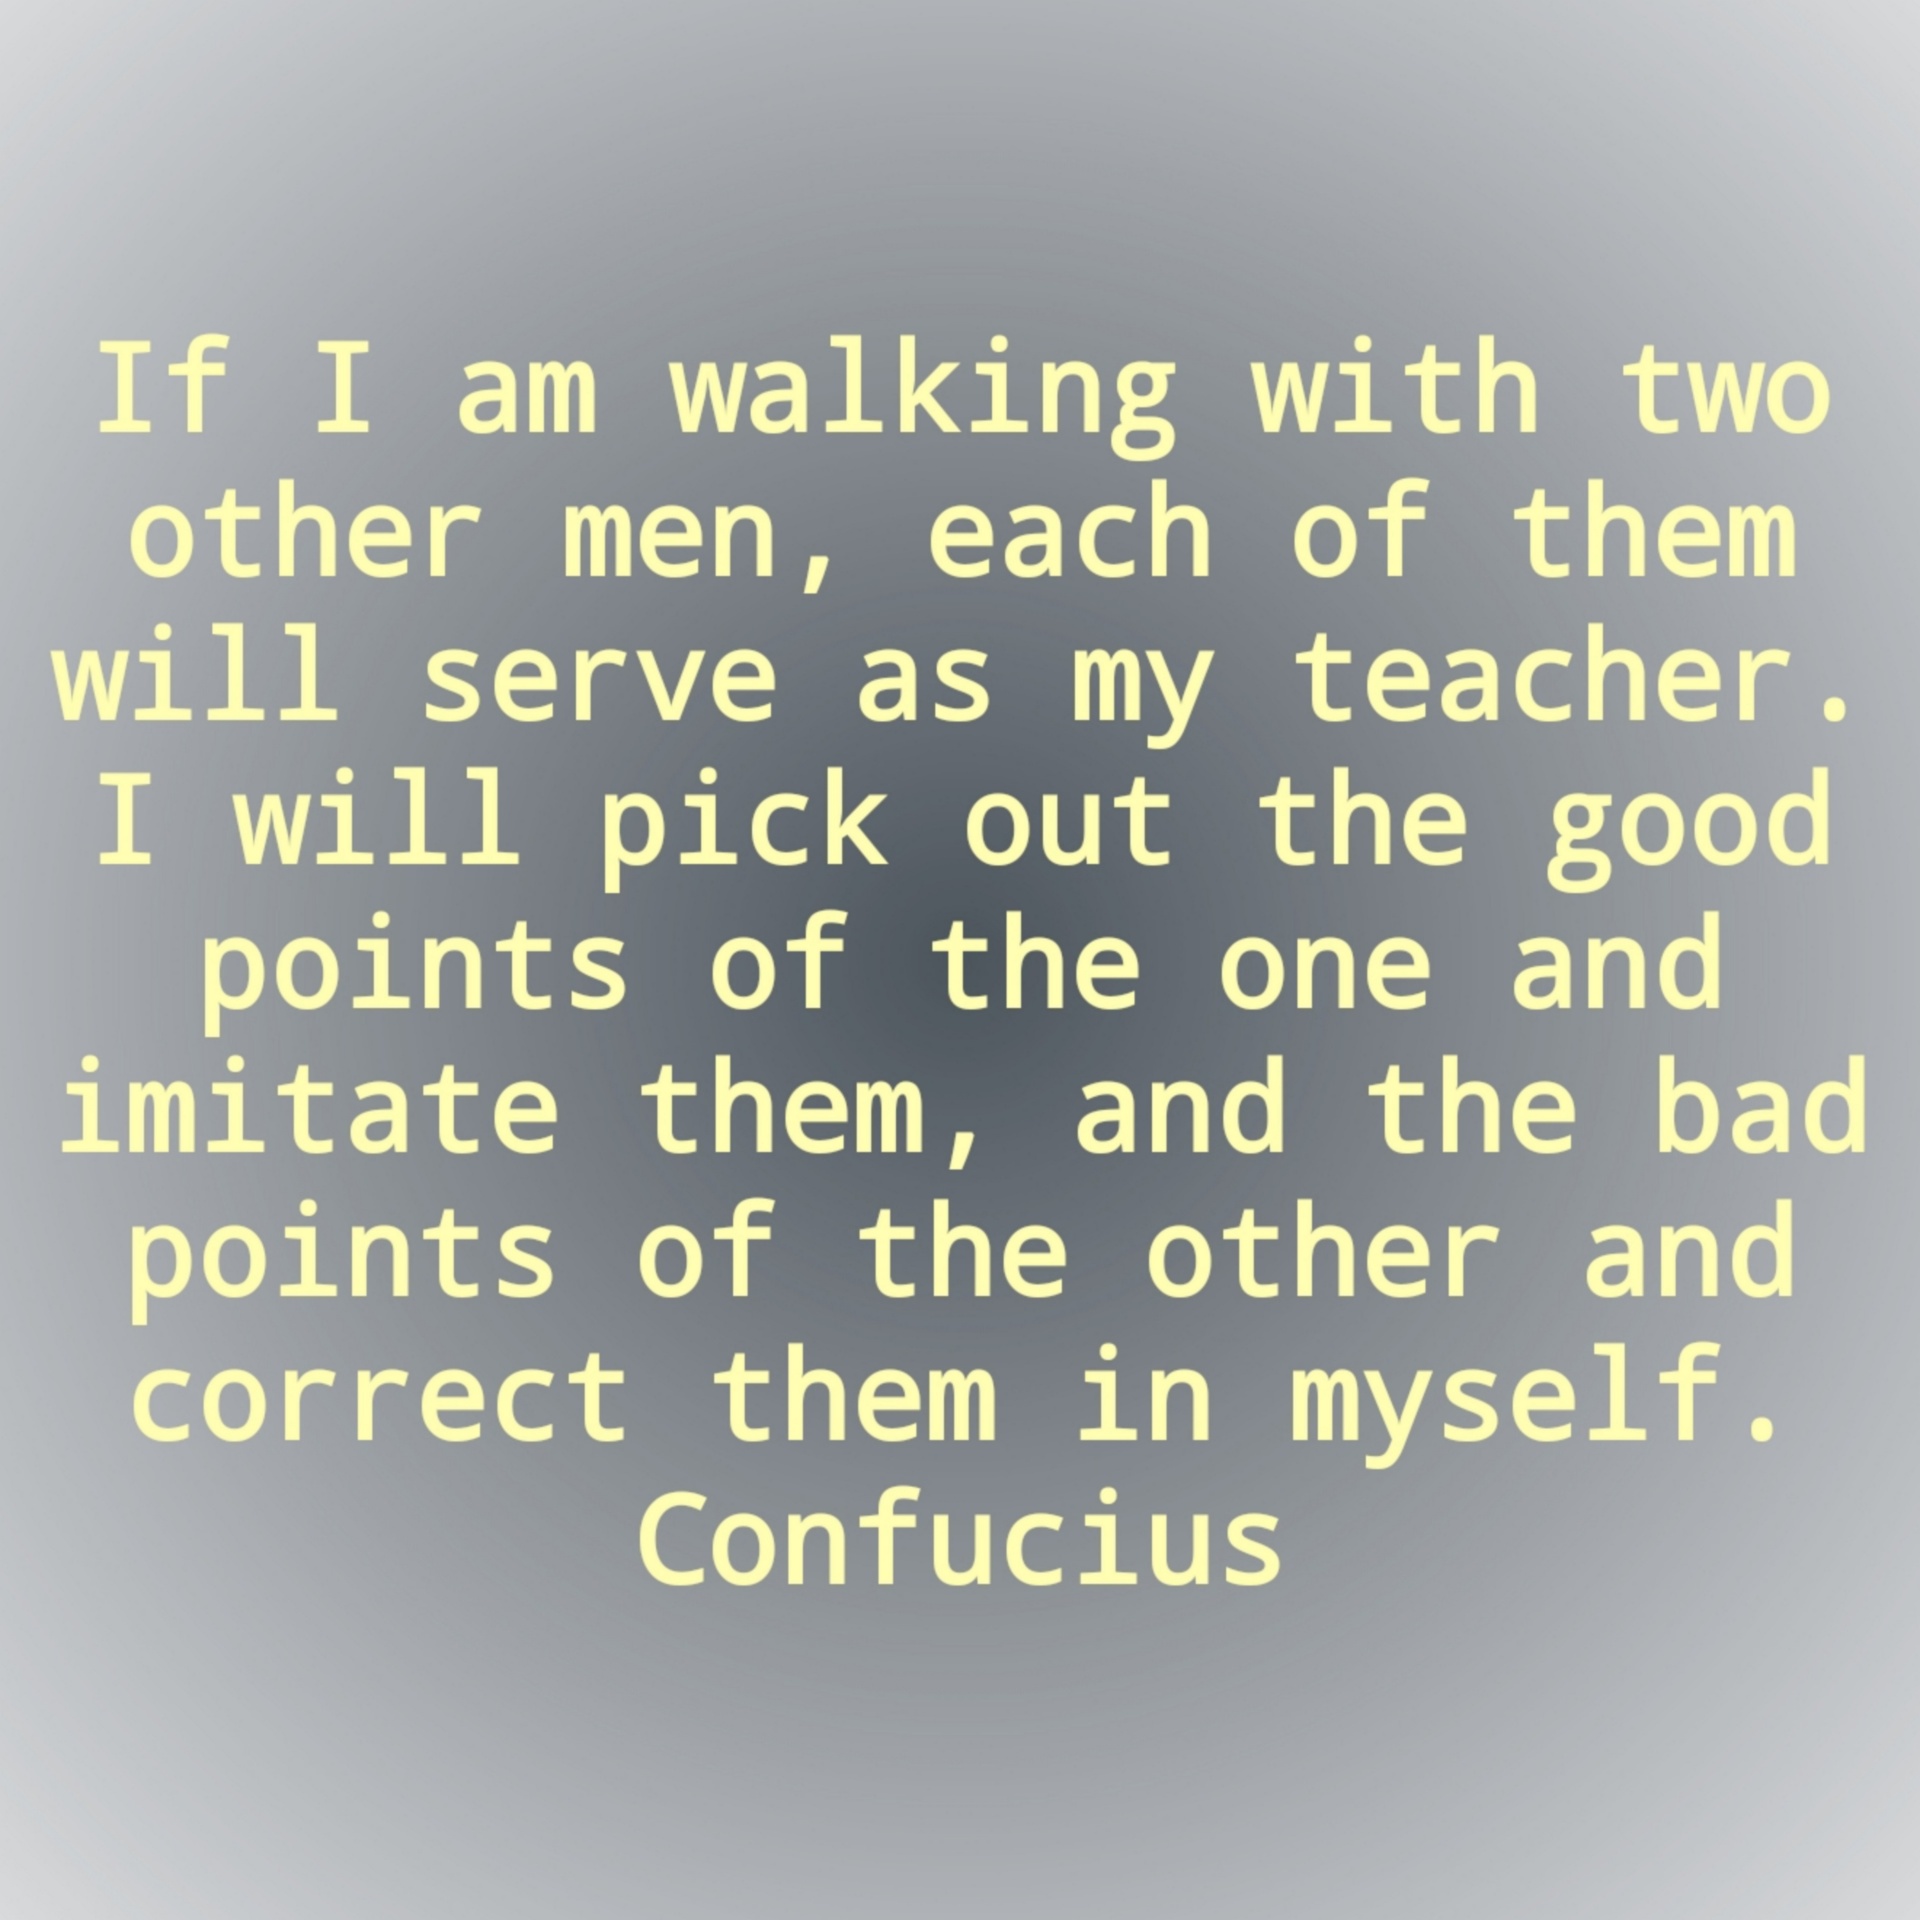 confucius quote teacher free photo